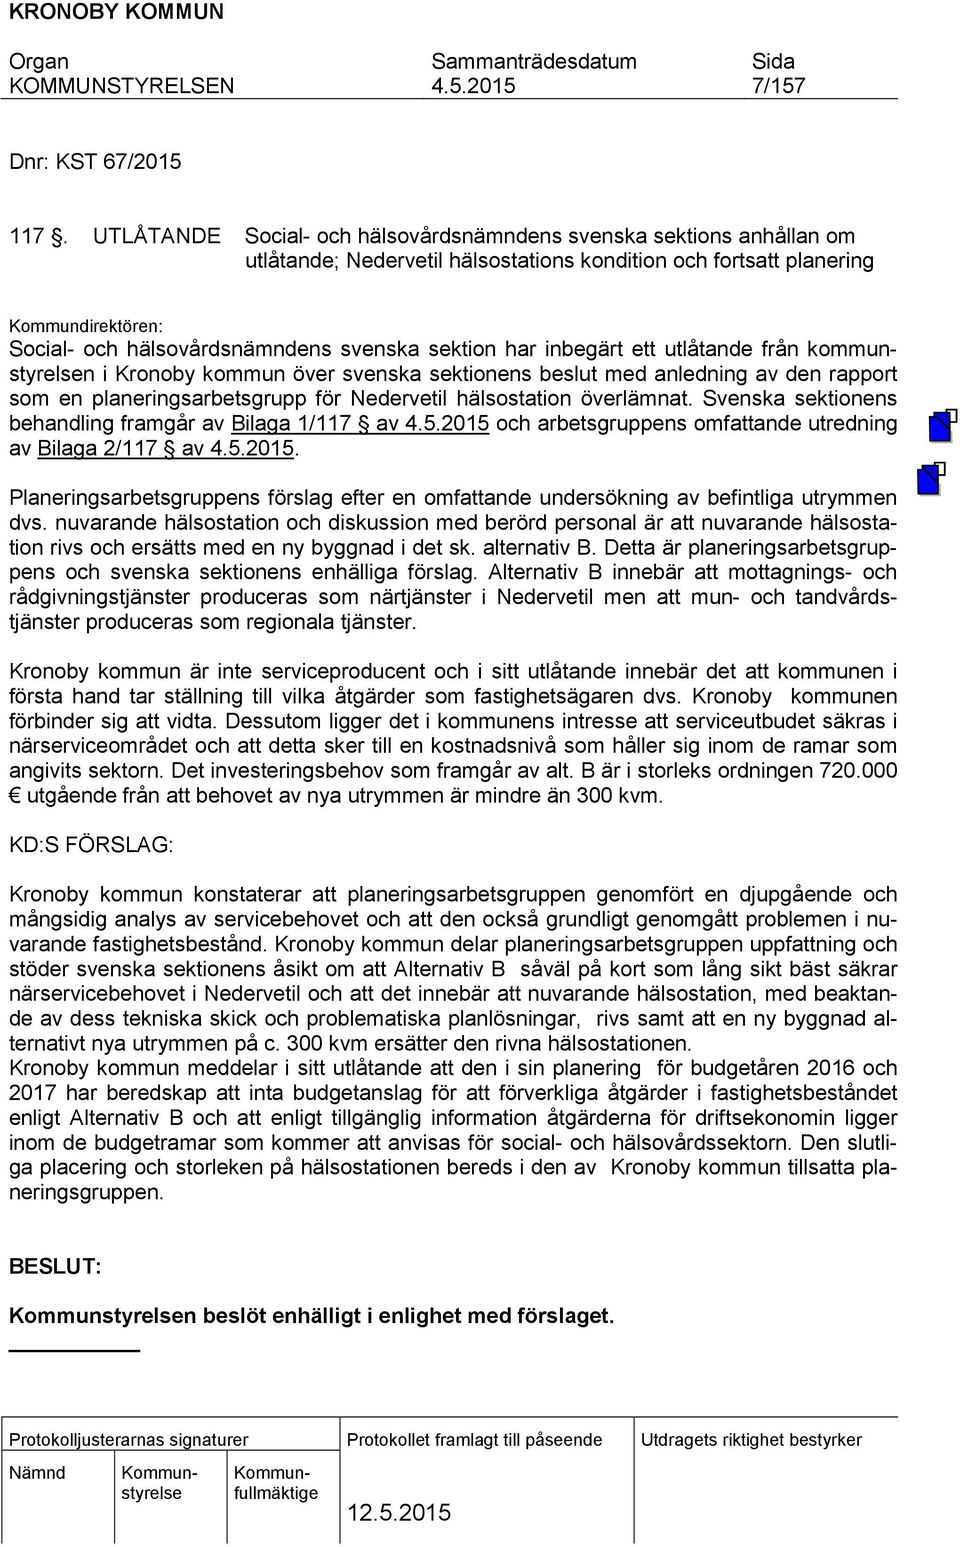 sektion har inbegärt ett utlåtande från kommunstyrelsen i Kronoby kommun över svenska sektionens beslut med anledning av den rapport som en planeringsarbetsgrupp för Nedervetil hälsostation